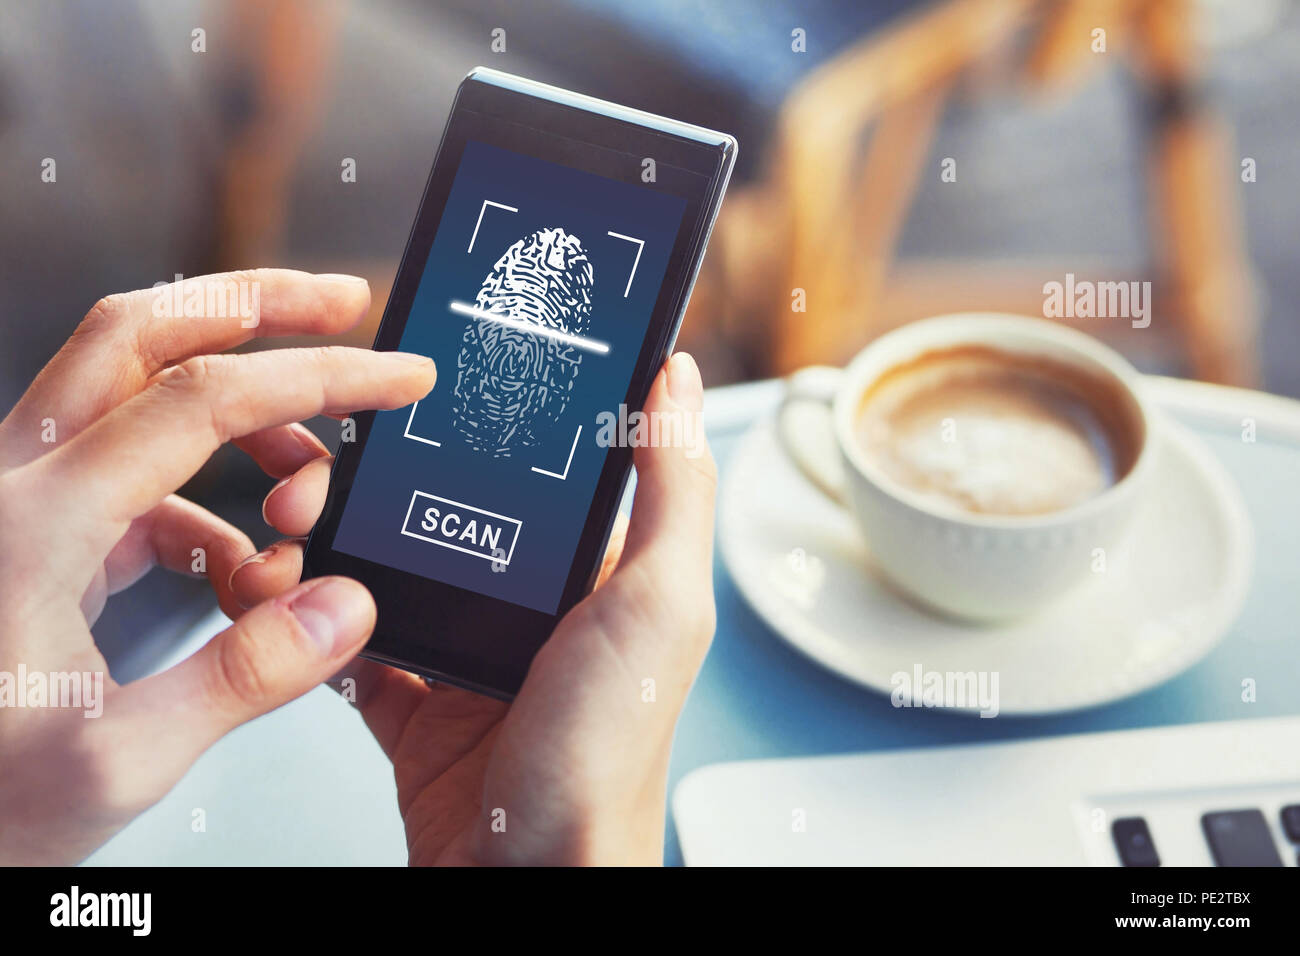 Des empreintes digitales sur smartphone pour les appareils numériques, accès sécurisé aux données privées, concept d'identité biométriques autorisation Banque D'Images